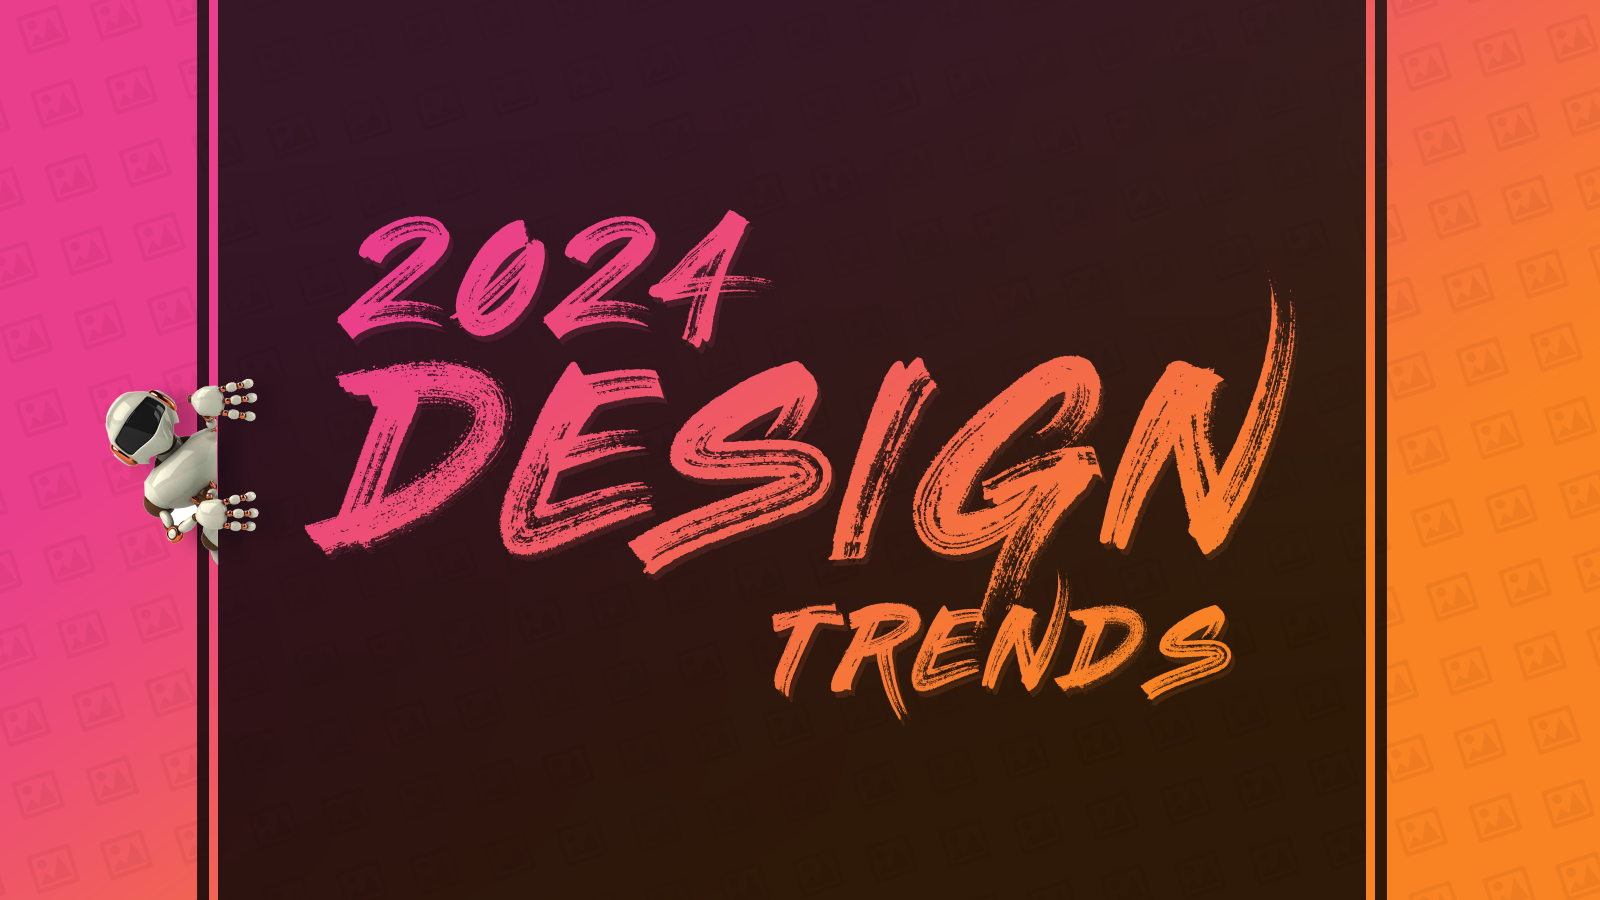 2024 Design Trends